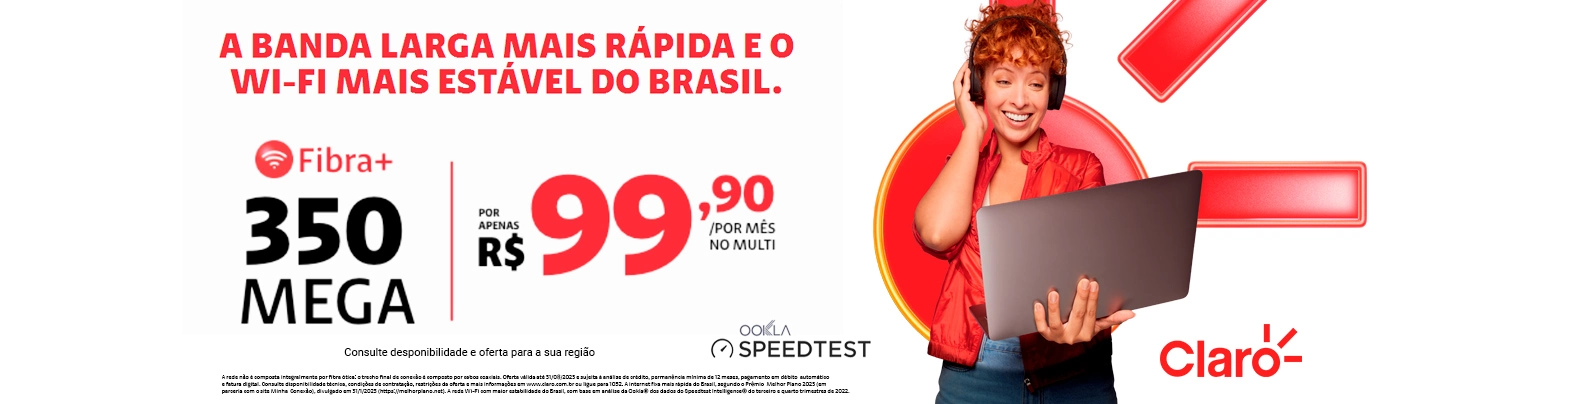 A banda larga mais rápida e o wi-fi mais estável do Brasil